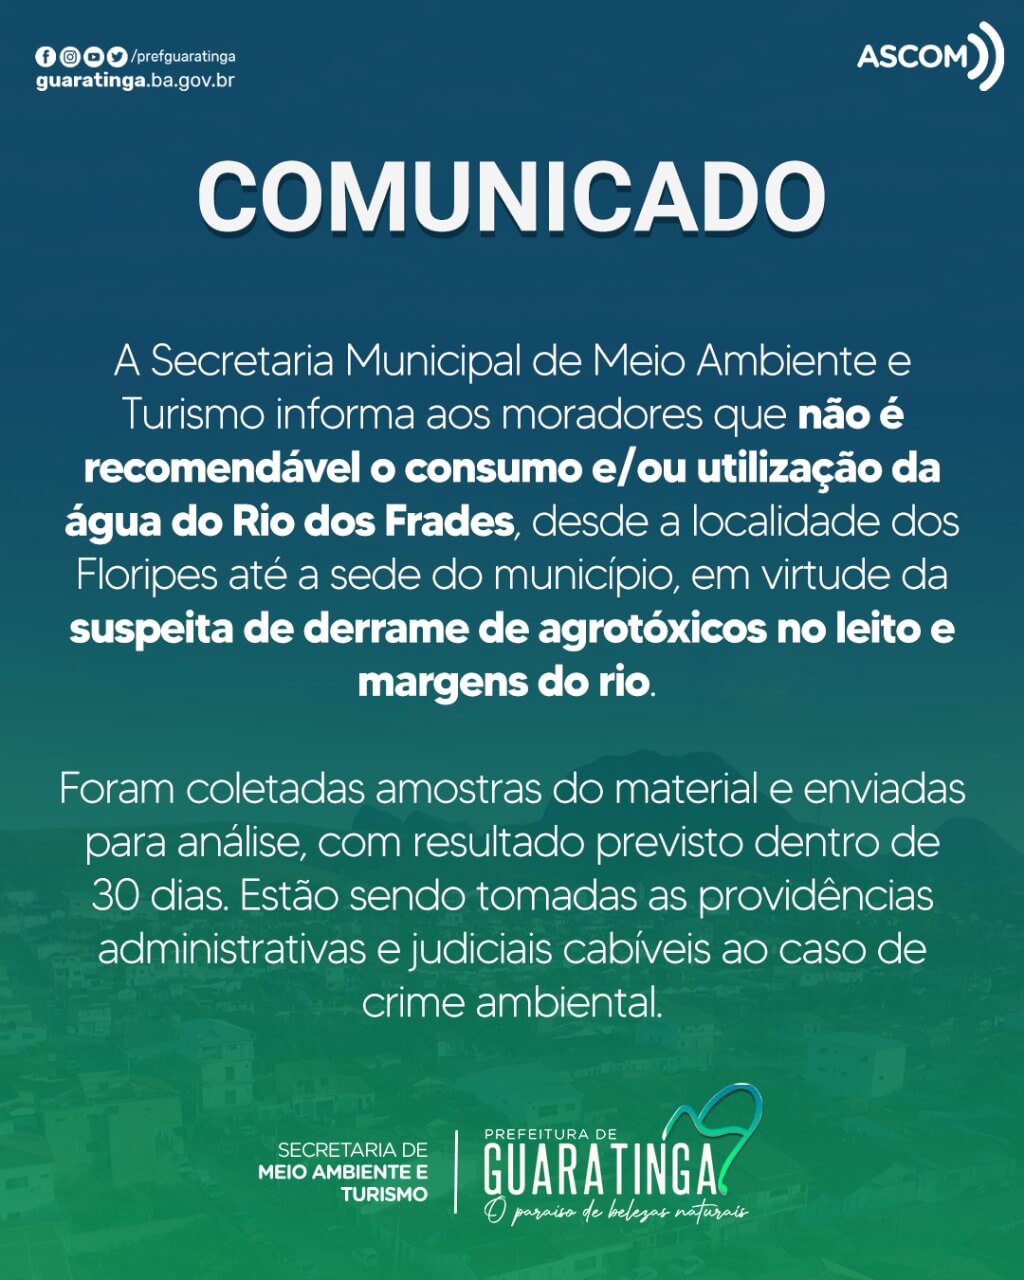 Secretaria de Meio Ambiente de Guaratinga faz alerta sobre suspeita de contaminação de agrotóxicos no Rio dos Frades 4